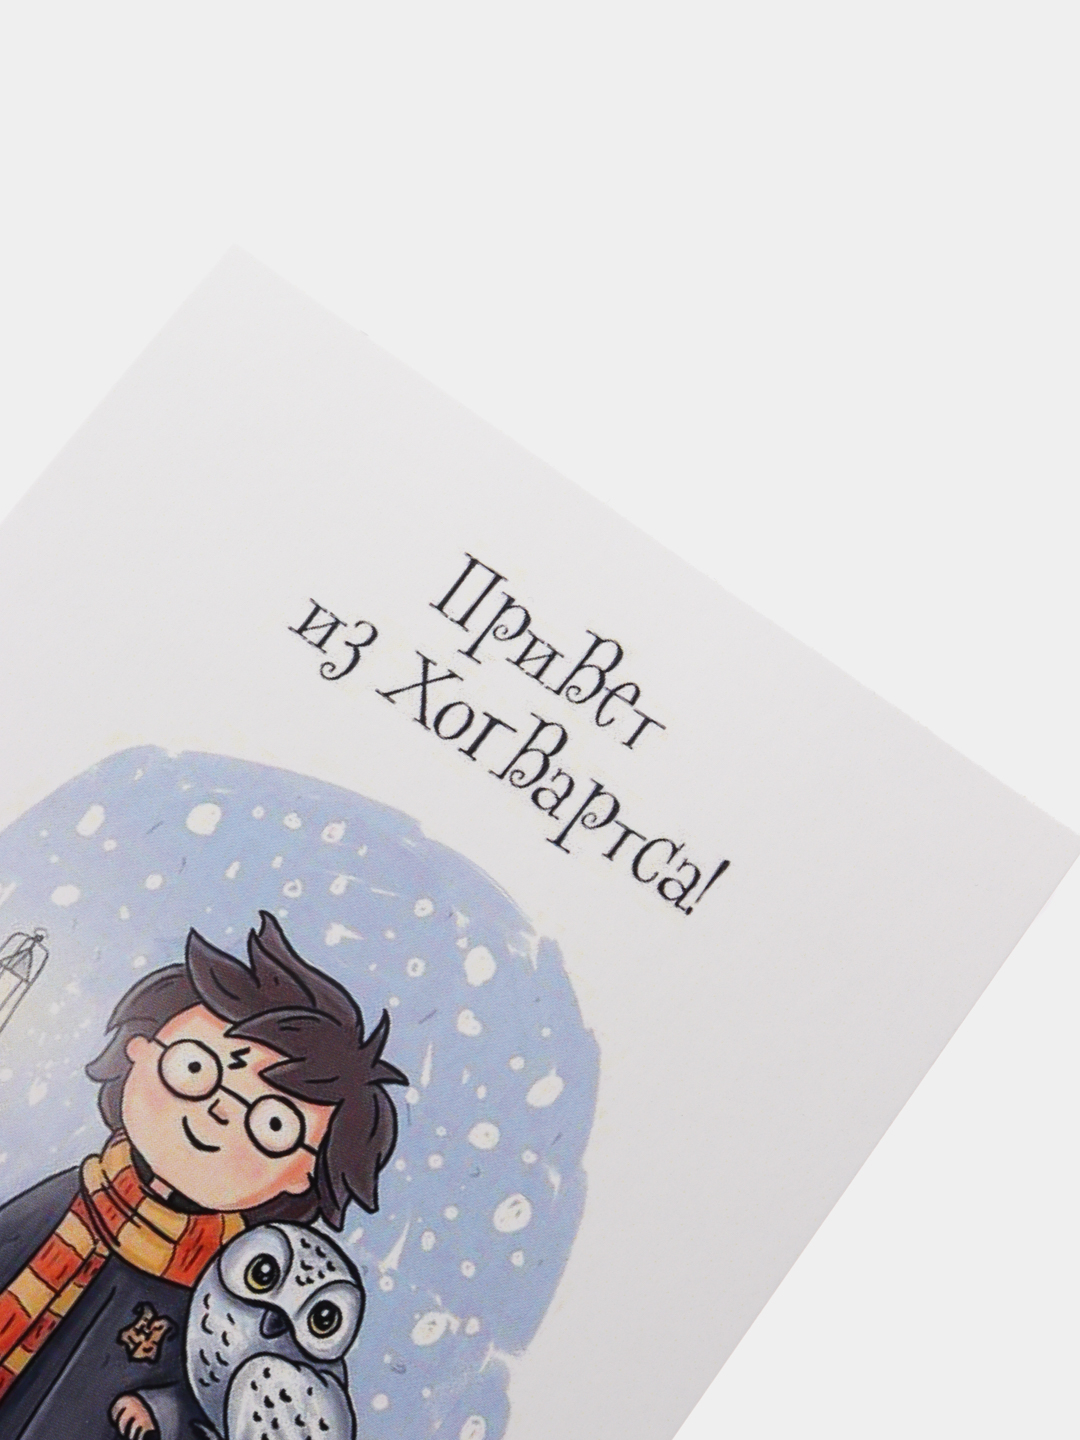 Гарри Поттер и музыкальные открытки